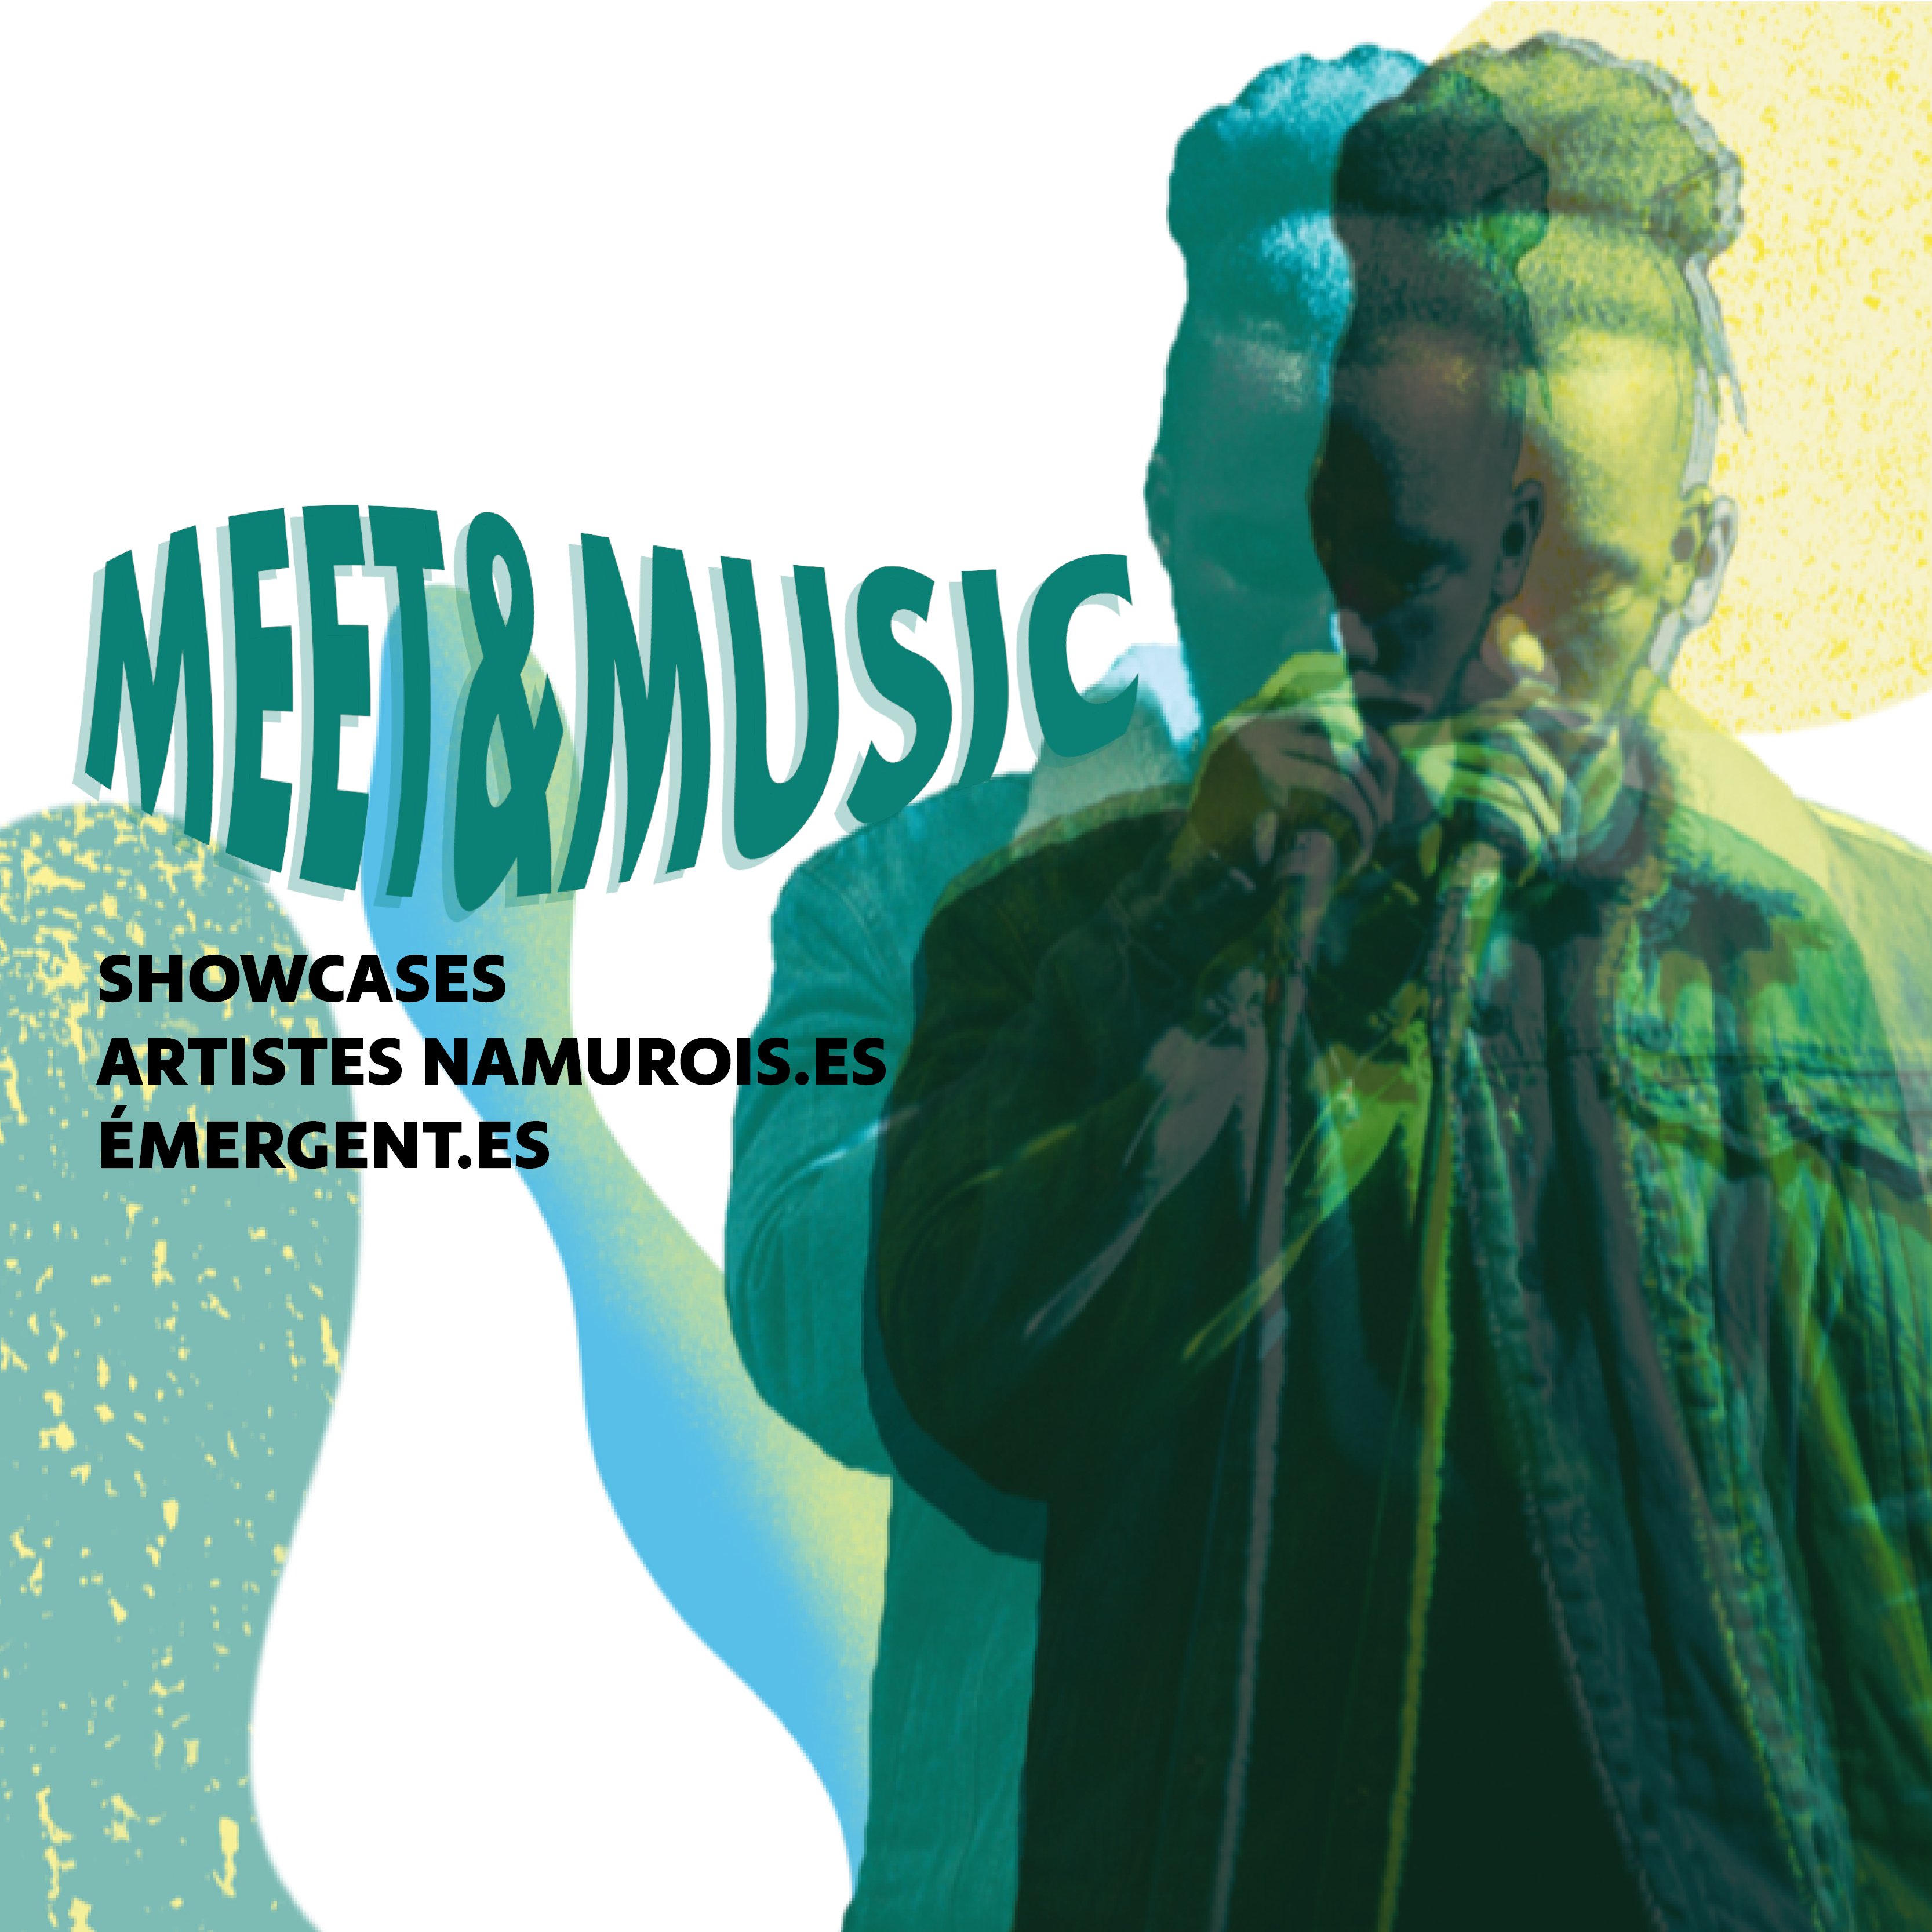 MEET & MUSIC - SHOWCASE ARTISTES NAMUROIS·ES ÉMERGENT·ES